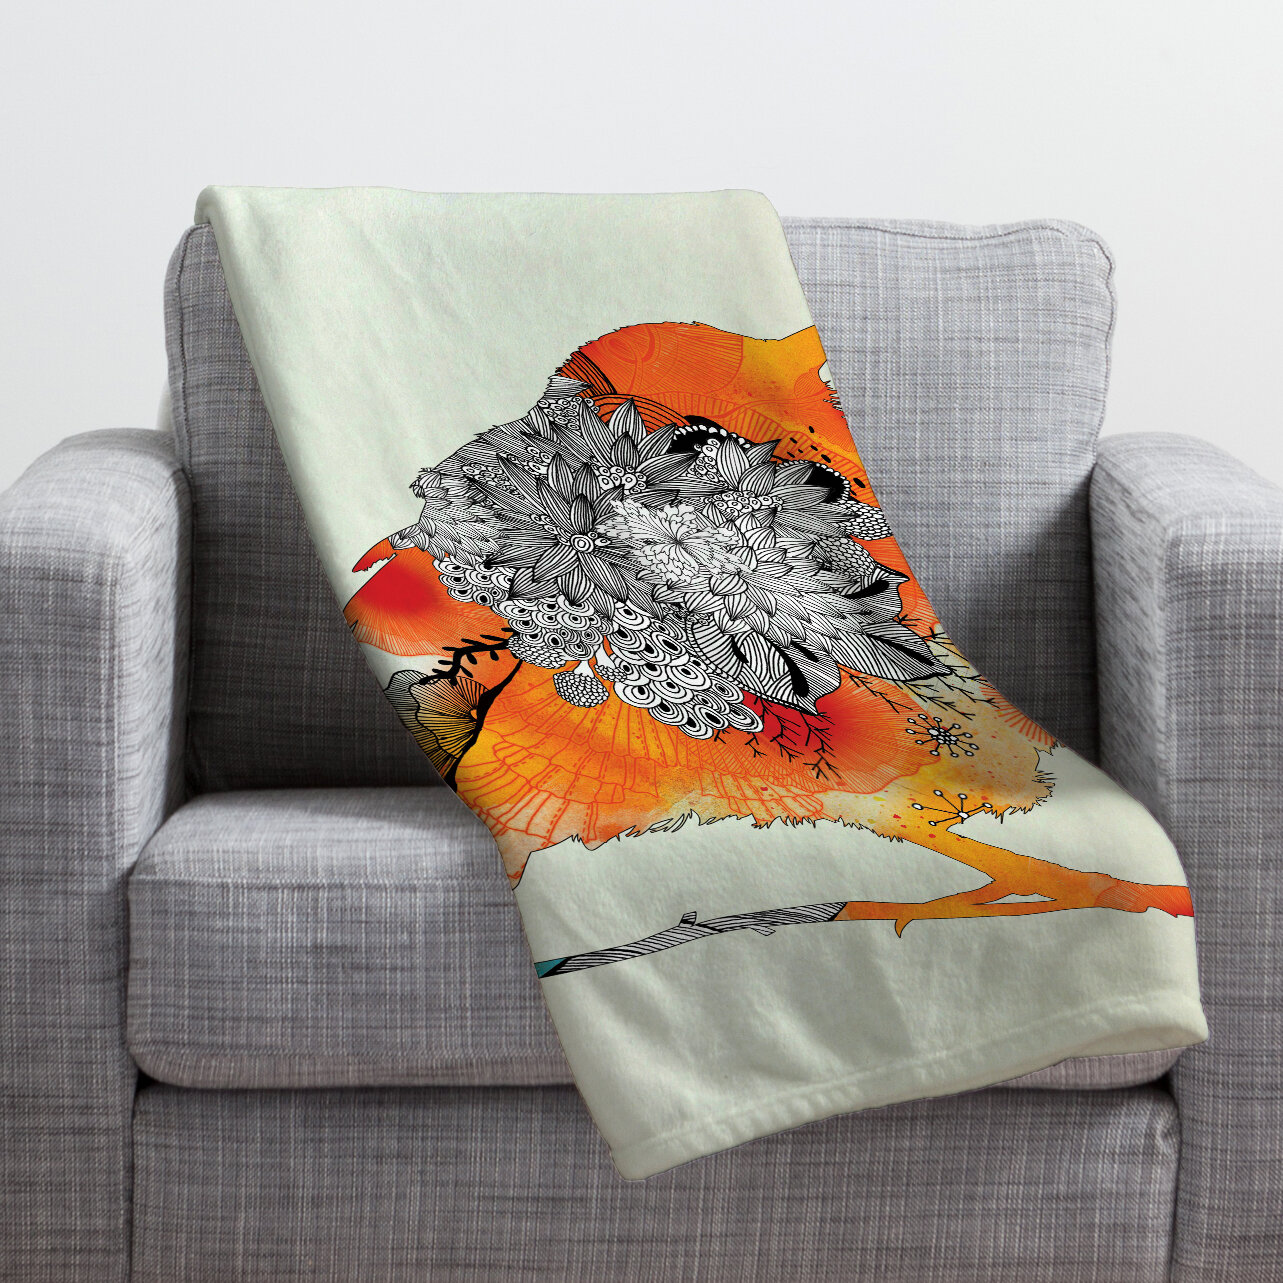 orange throw blanket and pillows